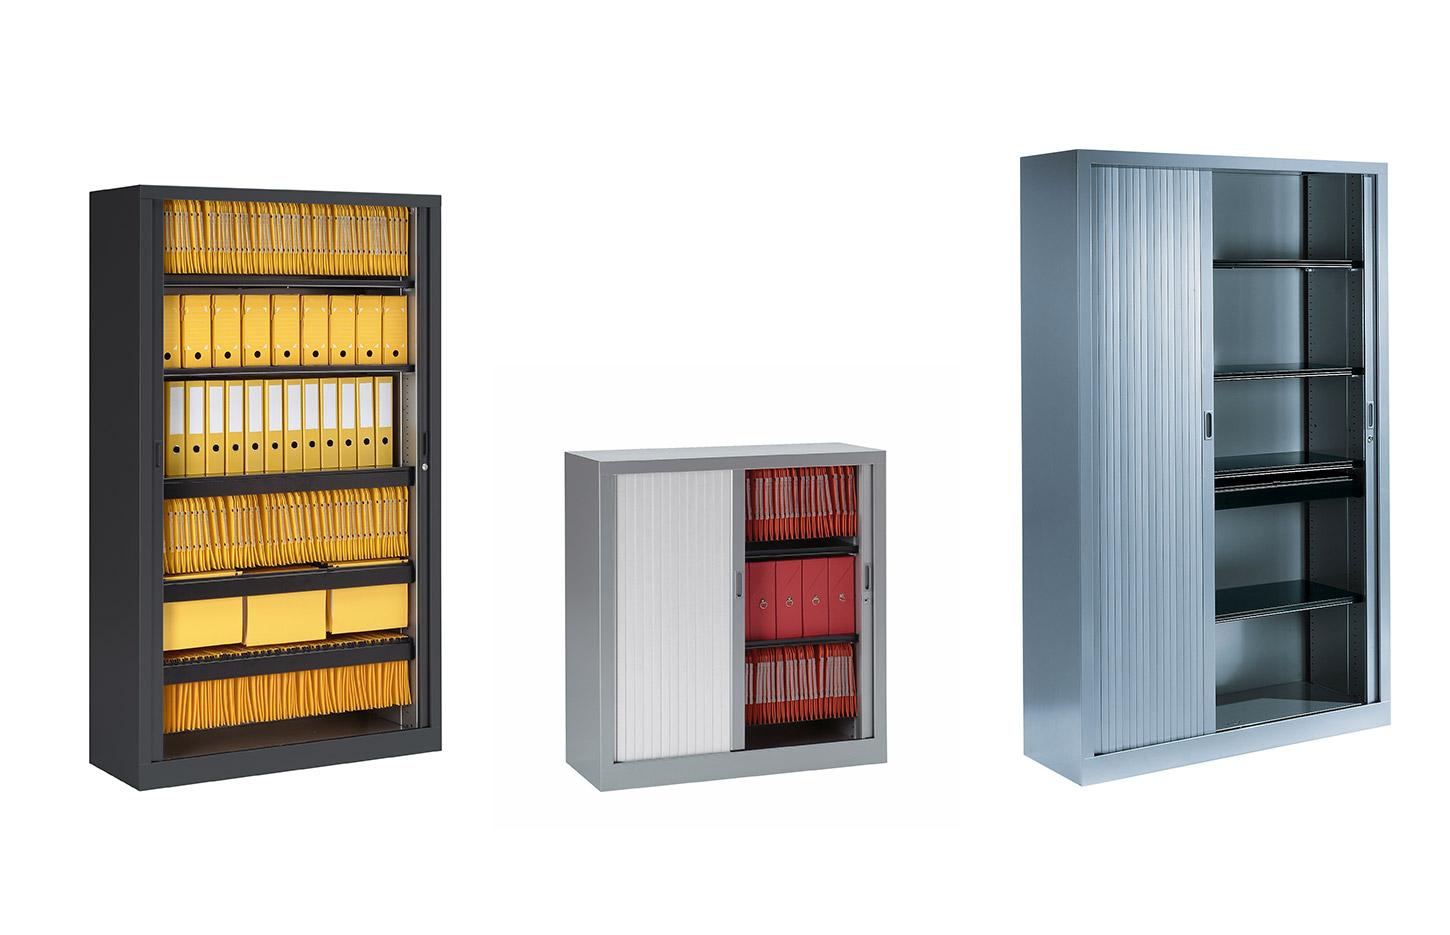 Rangement de bureau, avec portes en bois ou de couleurs, Fabrication Française, gamme Dolomites - France Bureau